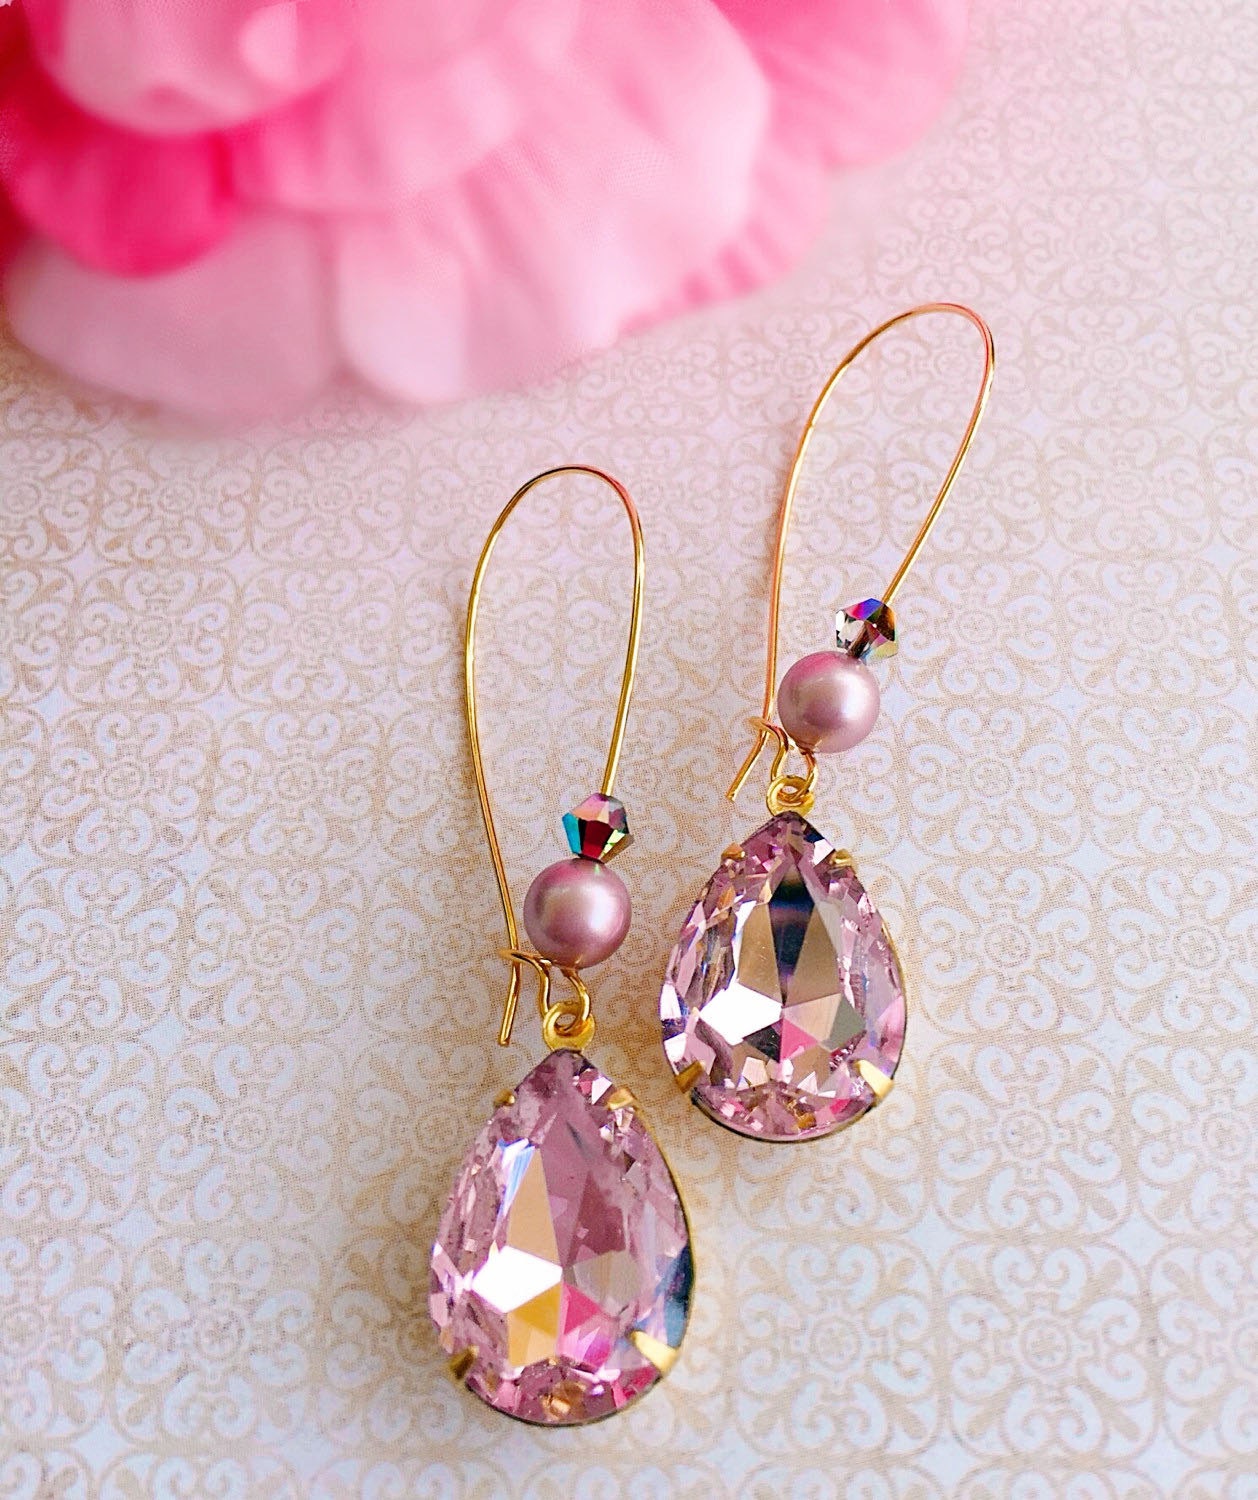 Rose Quartz Earrings - Pink Earrings - Bridesmaid Gifts - October Birthstone Jewelry - Victorian Earrings - BELLE Pink